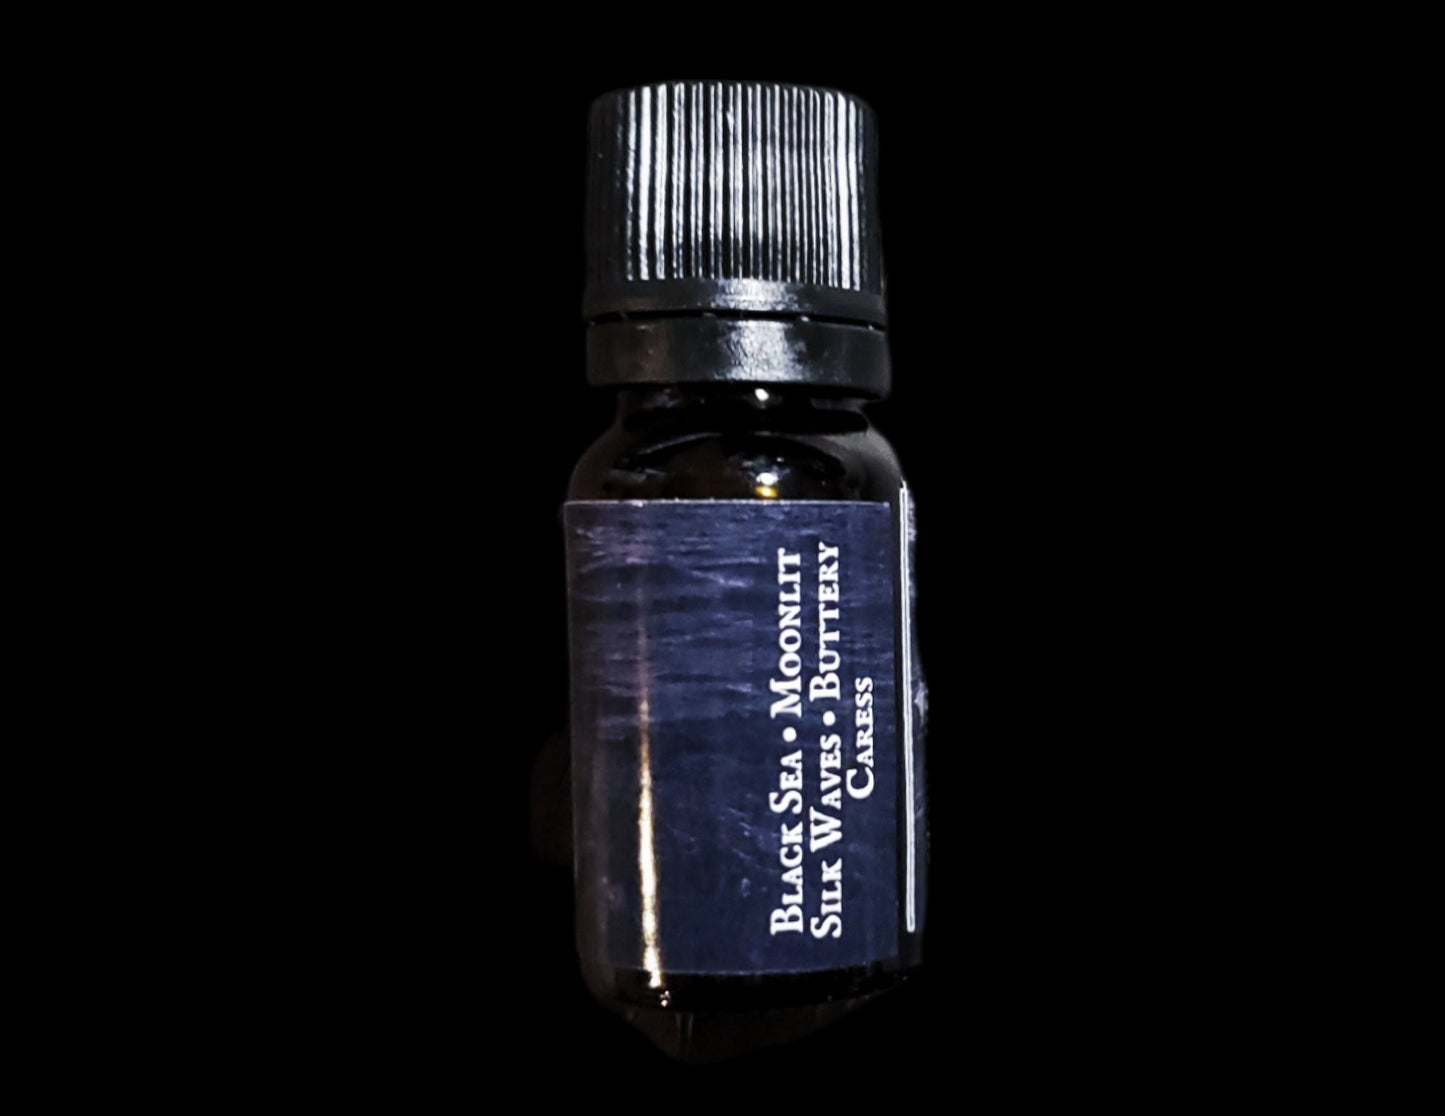 Dark Waters Perfume Oil